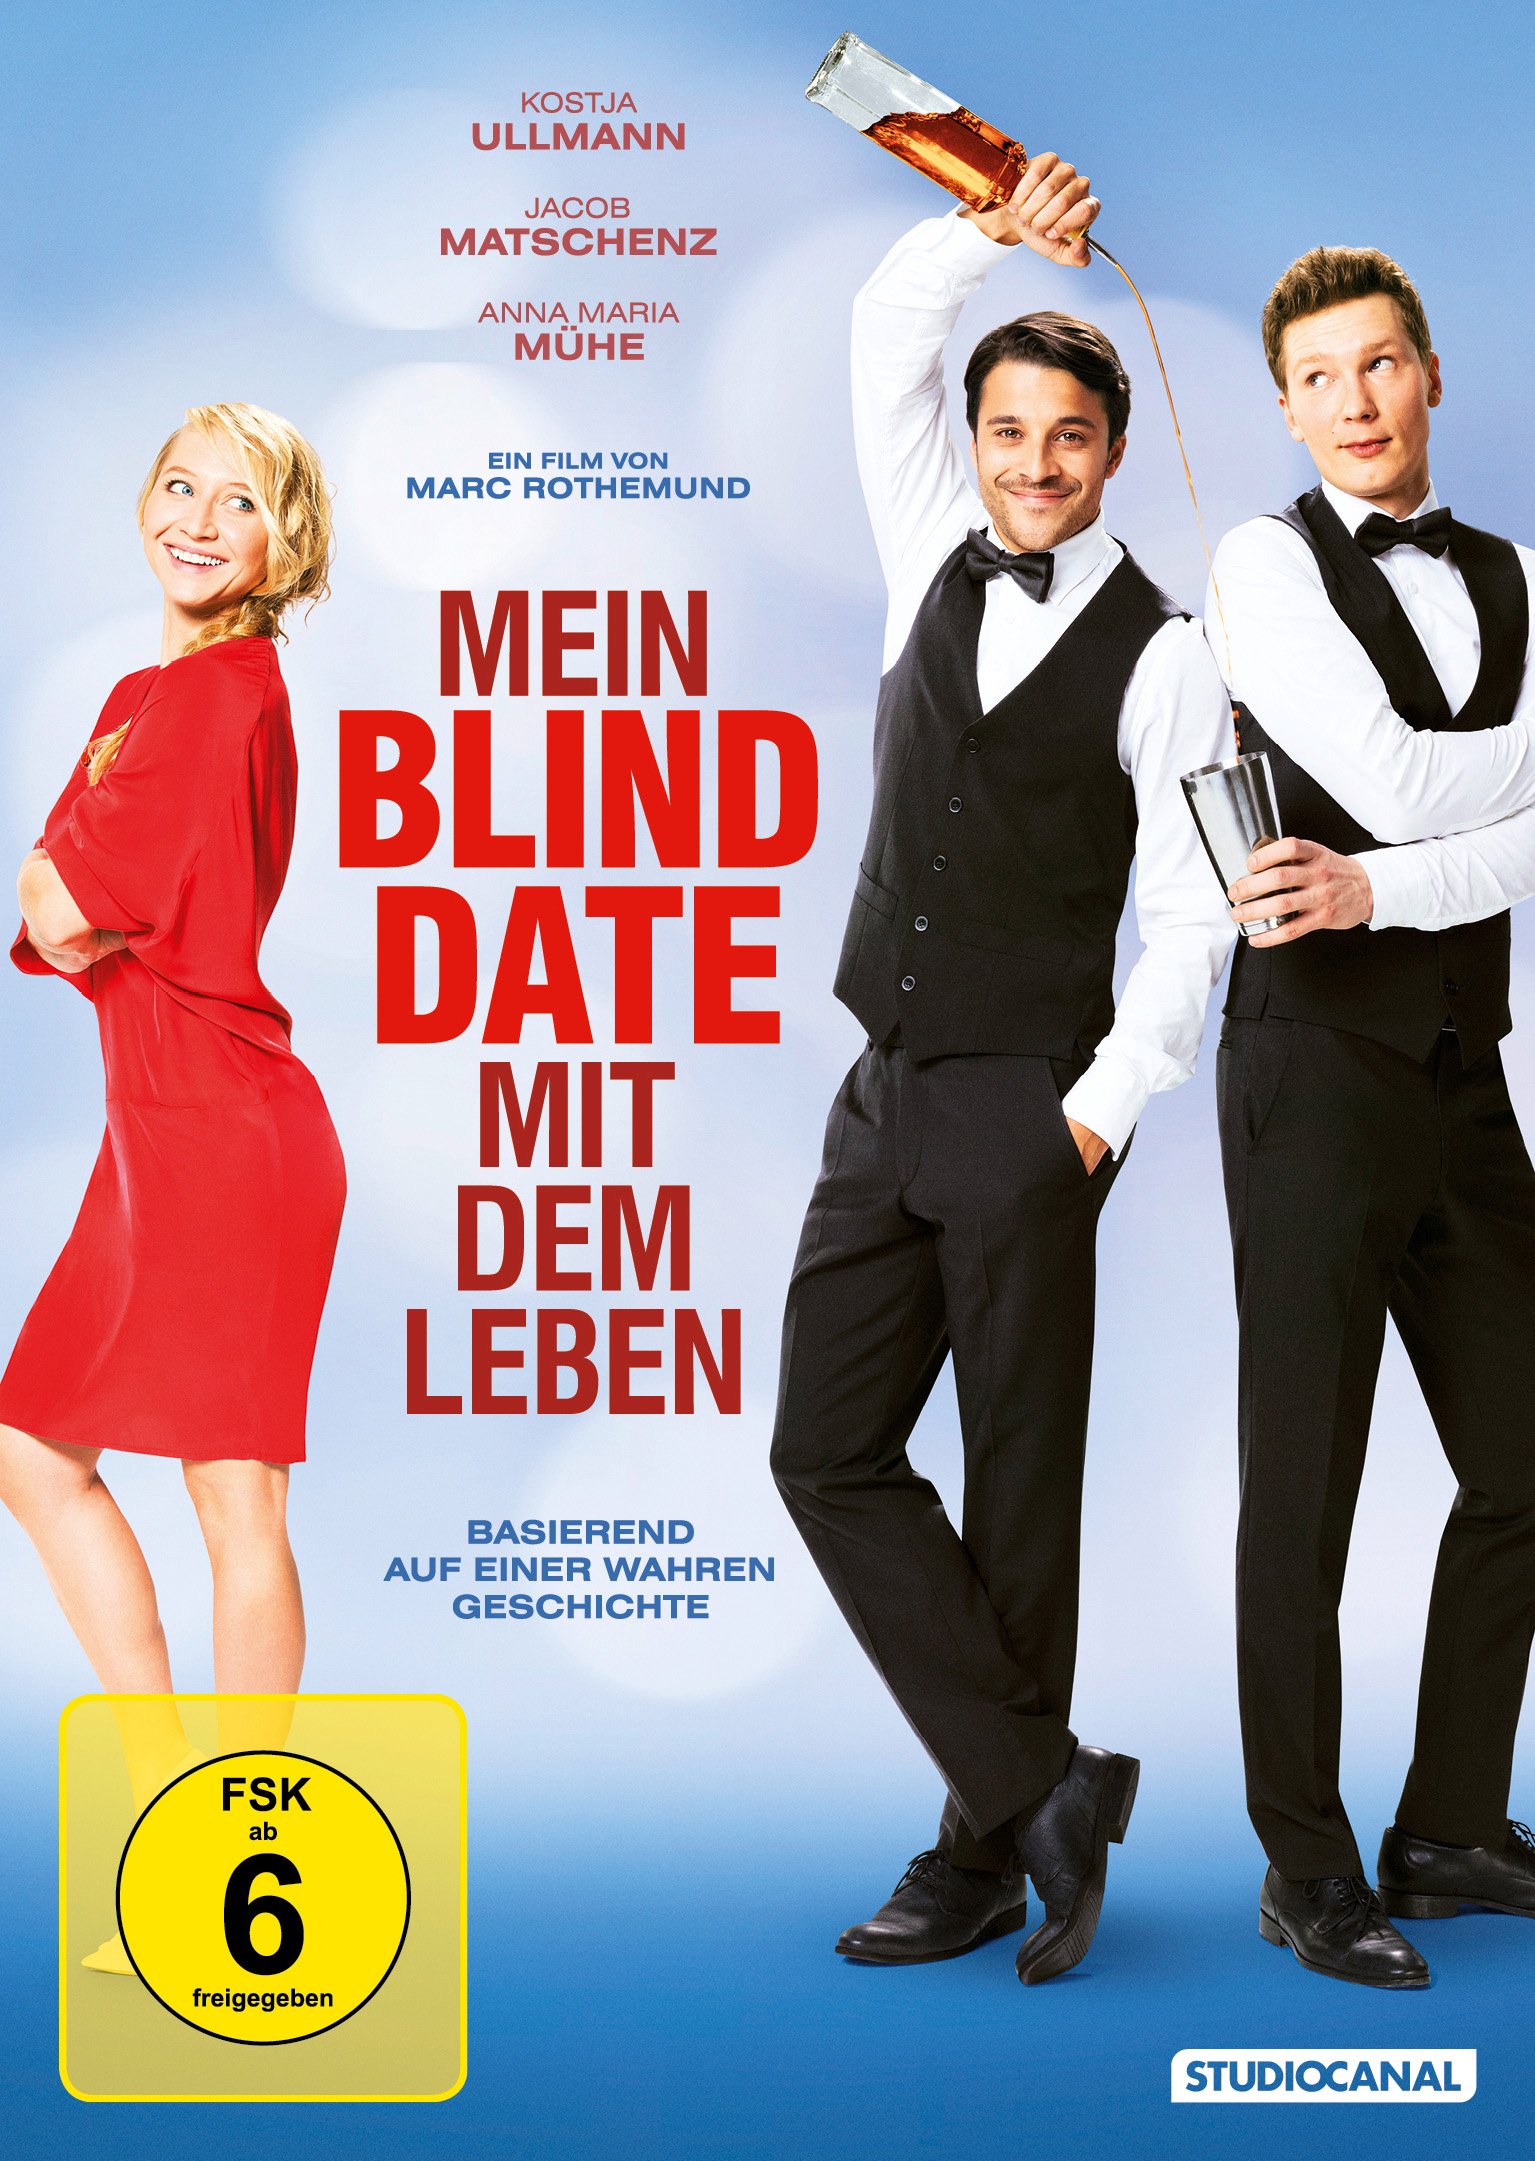 Leben Date mit DVD Blind Mein dem